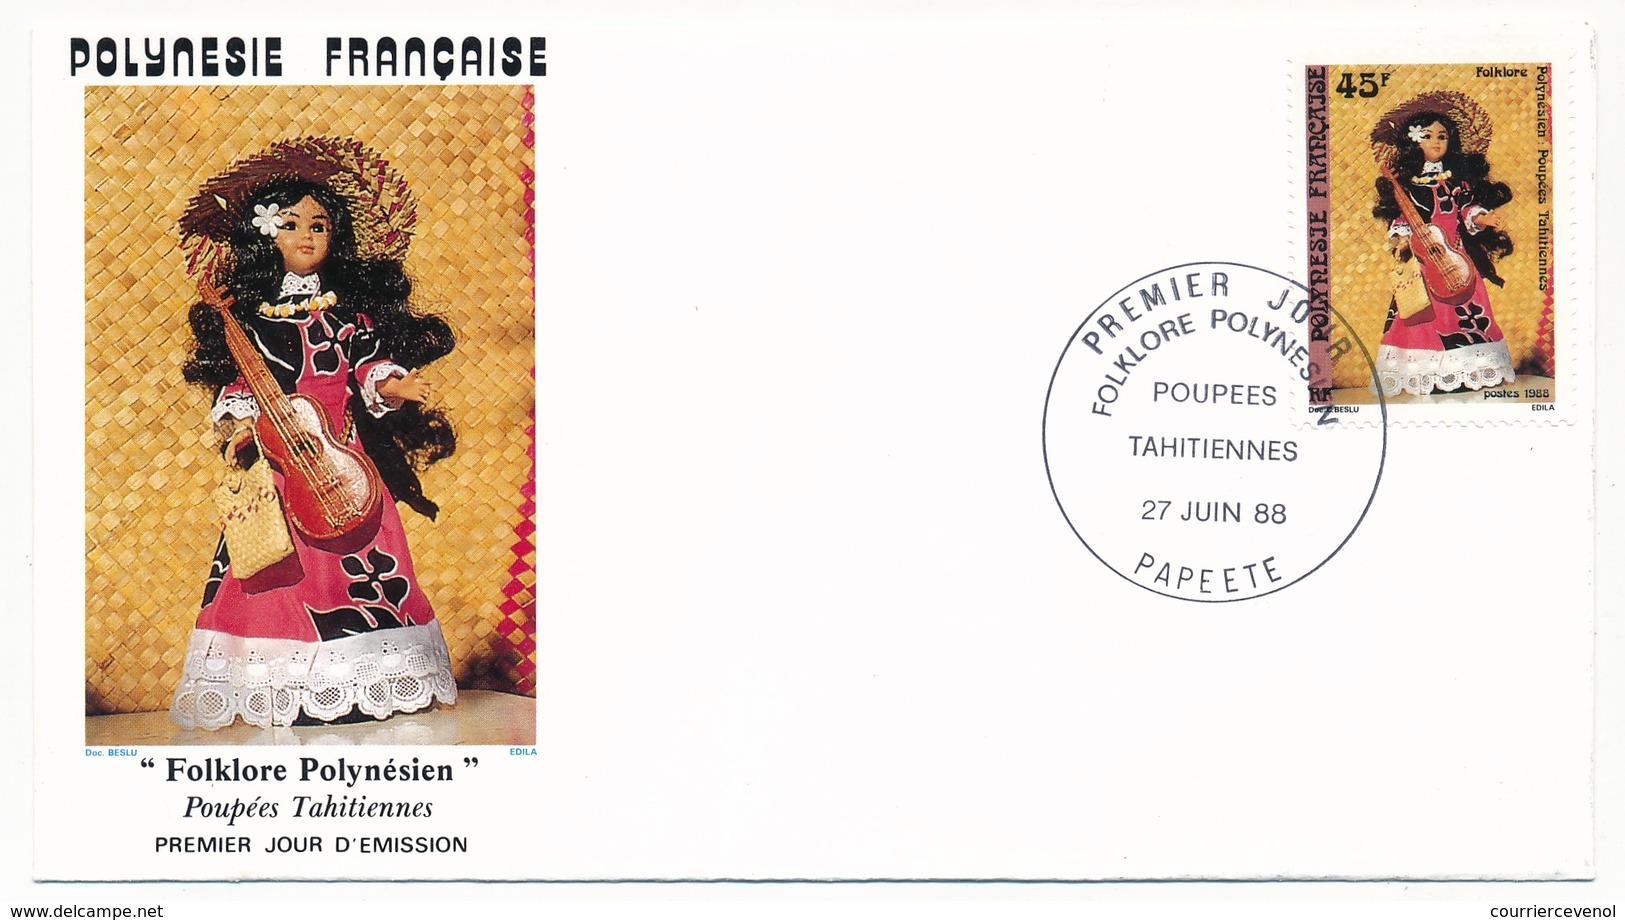 POLYNESIE FRANCAISE - 3 FDC - Folklore Polynésien / Poupées Tahitiennes - 27 Juin 1988 - Papeete - FDC